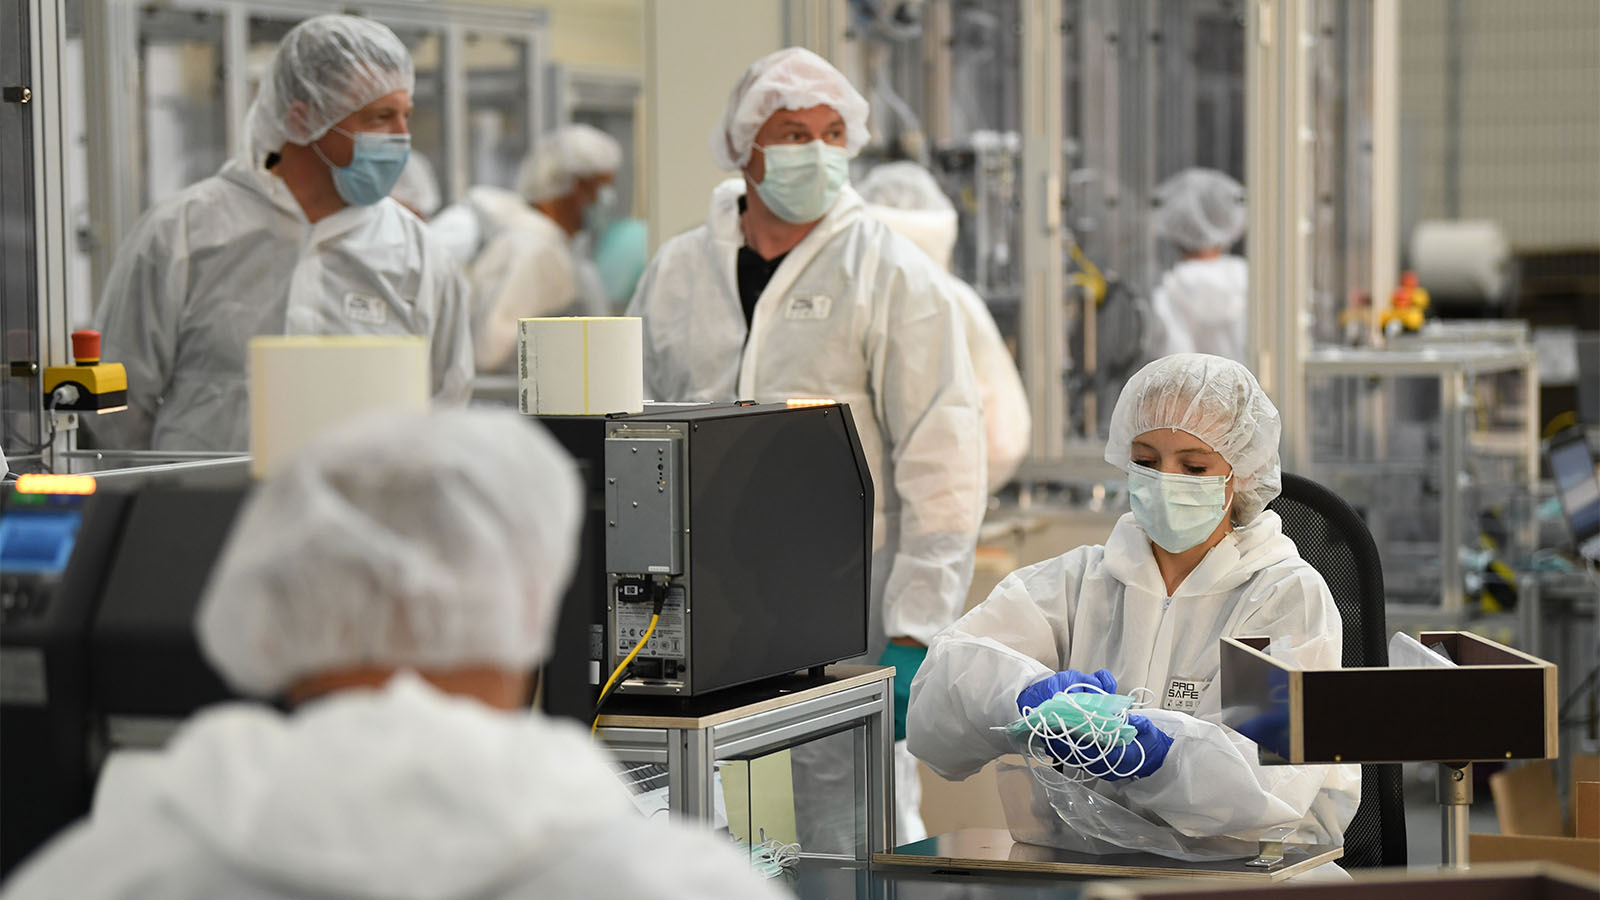 עובדים במפעל לייצור מסכות רפואיות בגרמניה (Andreas Gebert/Getty Images)